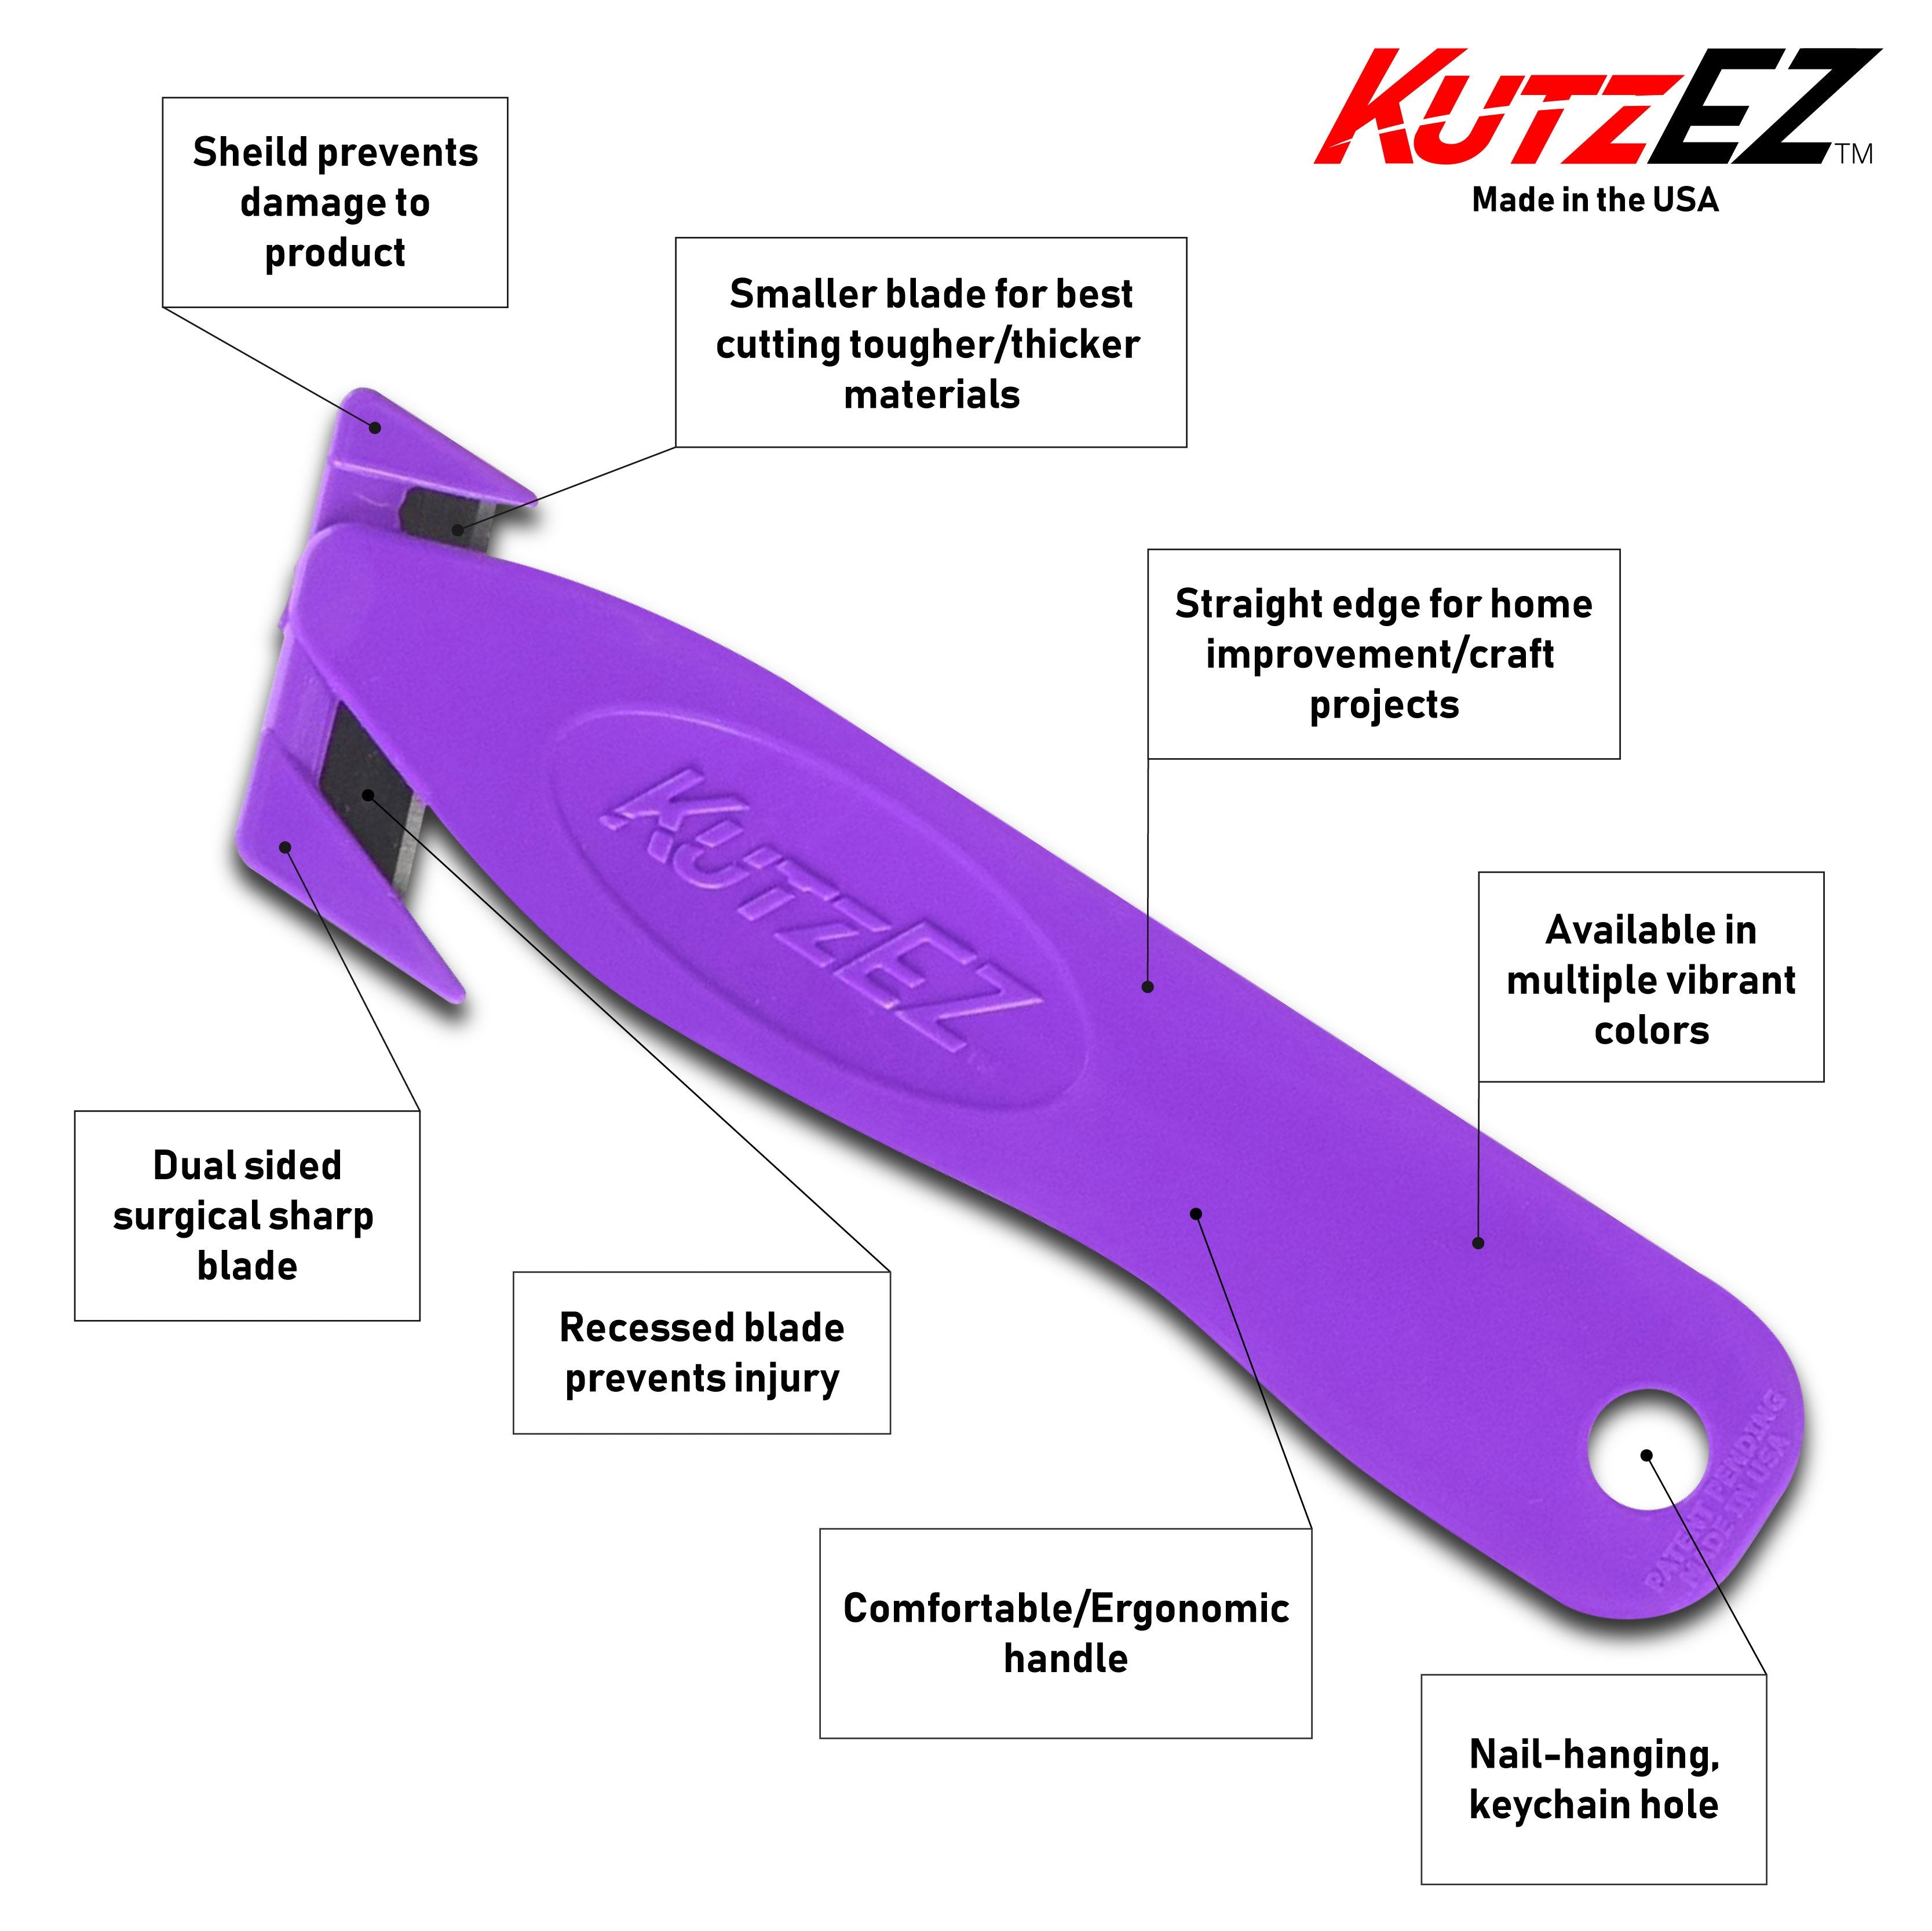 KutzEz Box Cutter Safety Knife